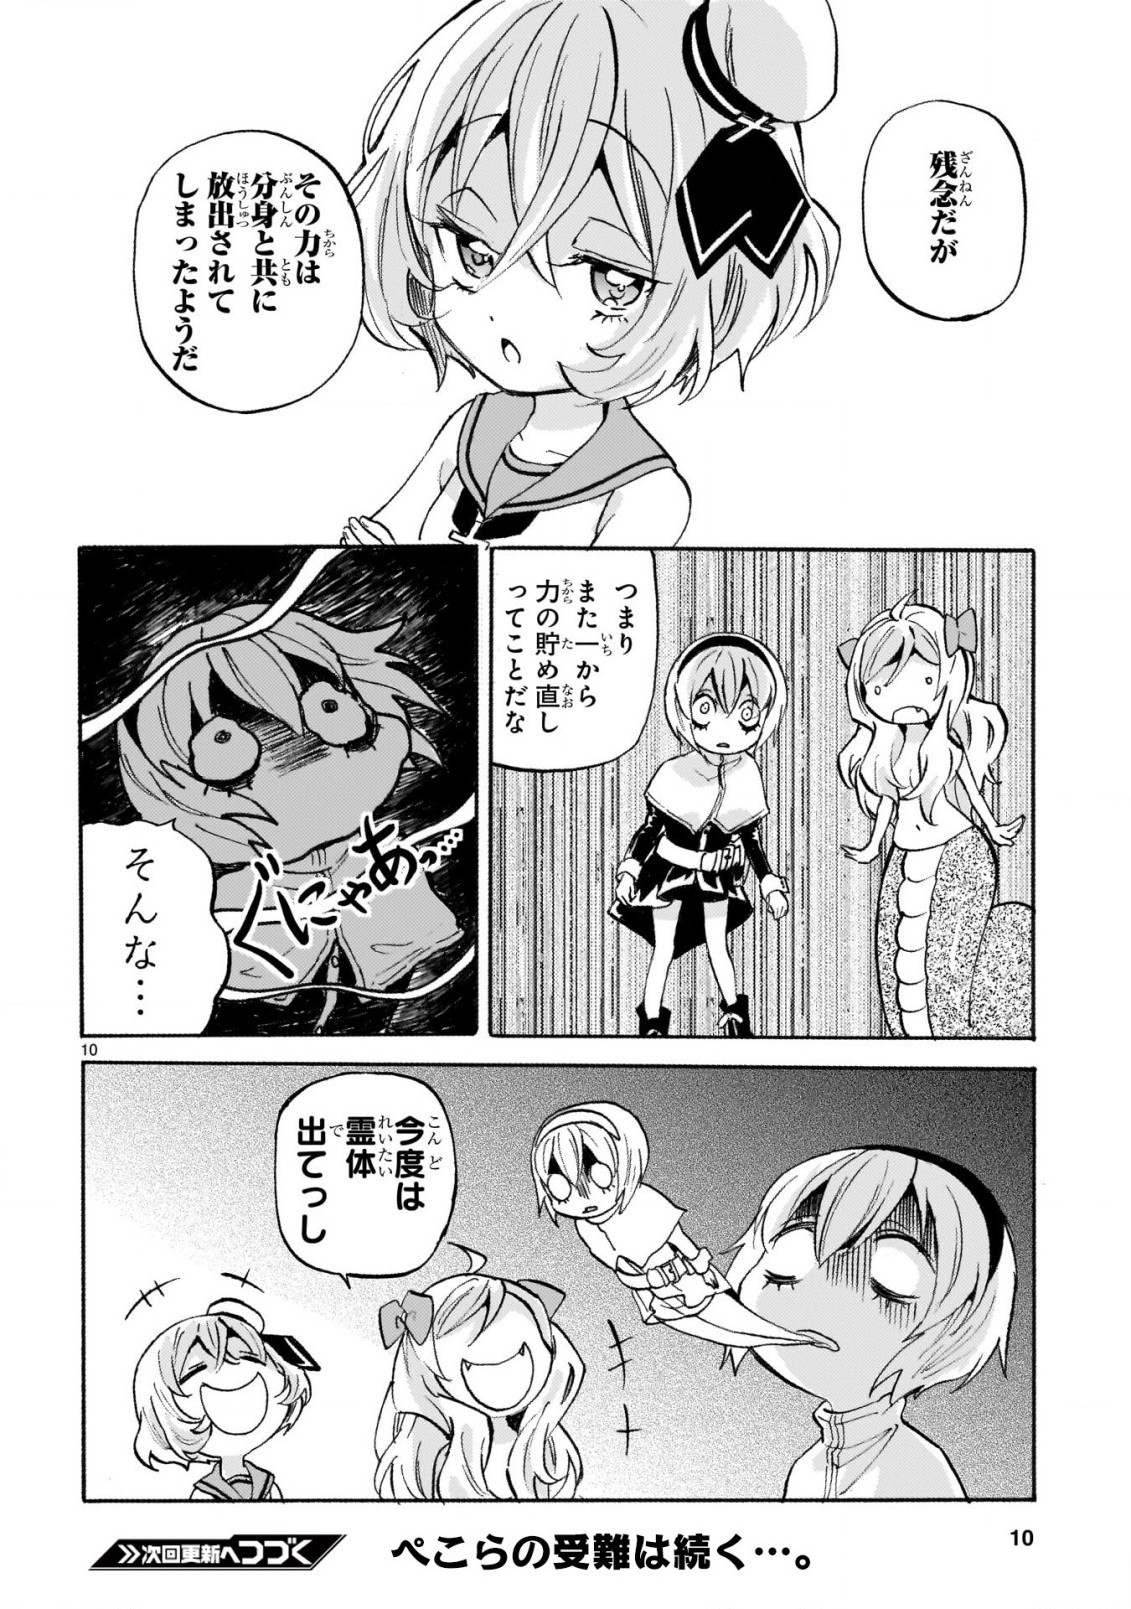 Jashin-chan Dropkick - Chapter 240 - Page 10